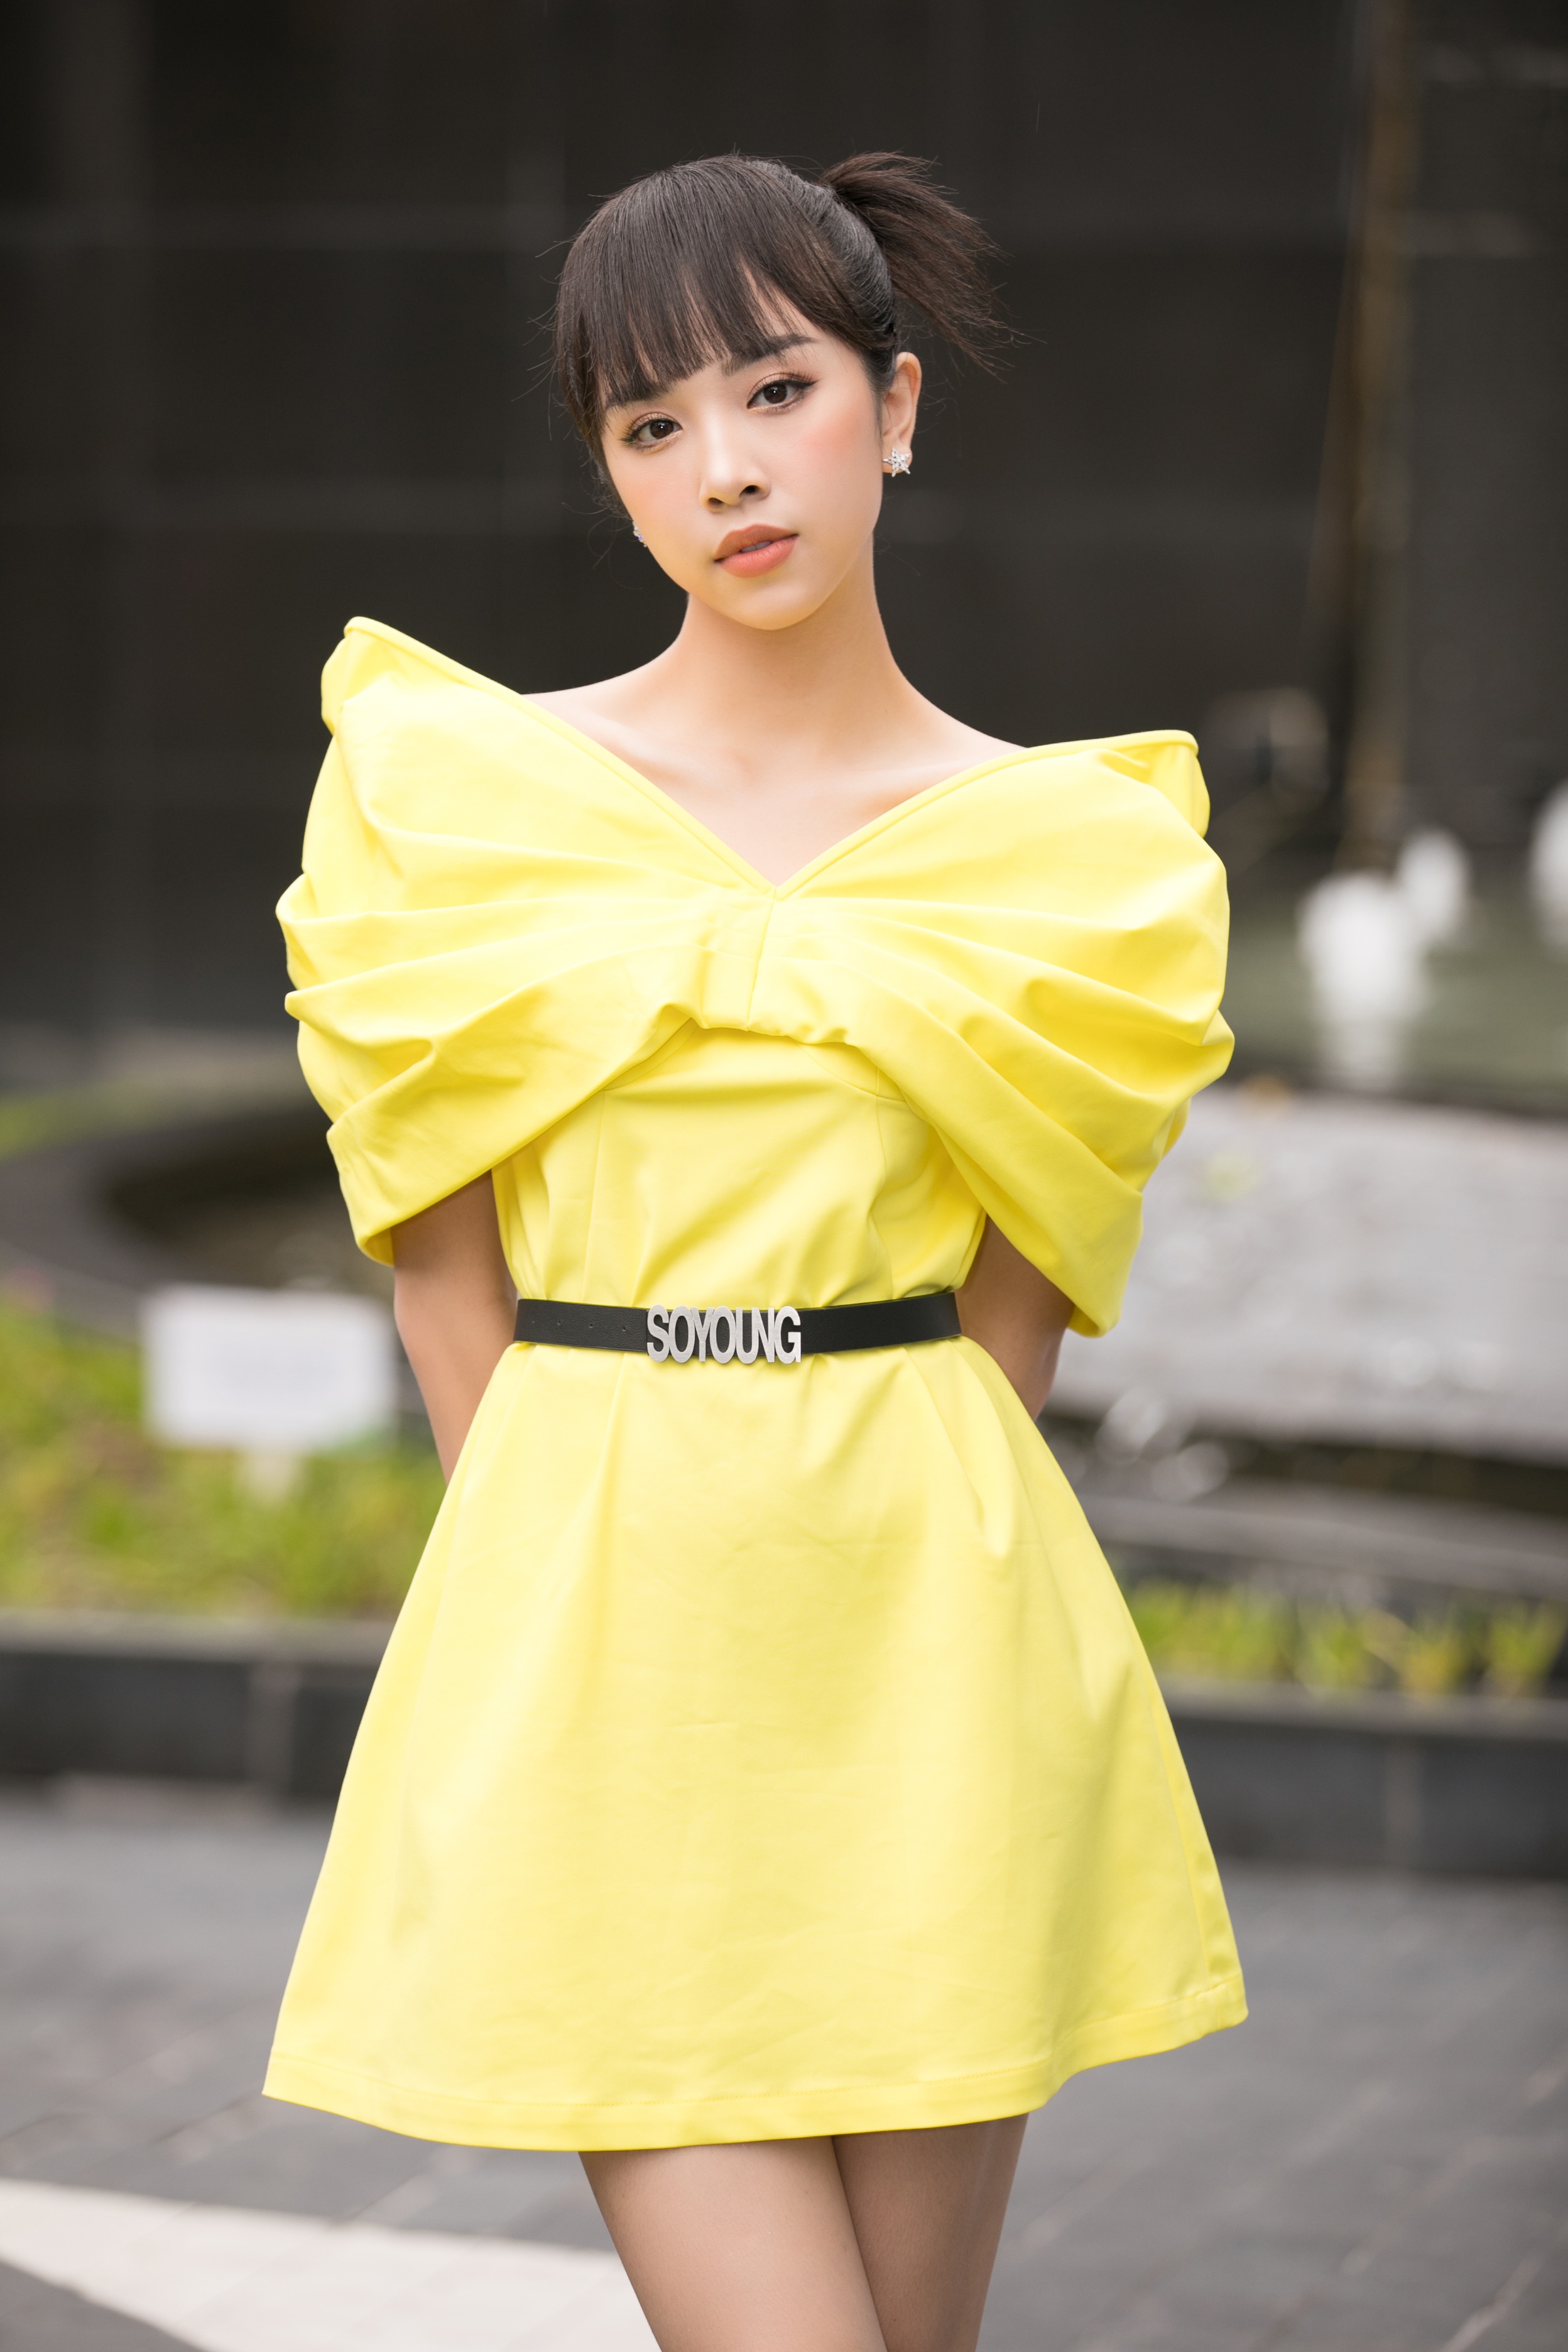 Đẹp lấn át thí sinh, Tiểu Vy trở về nơi đầu tiên ghi danh Hoa hậu Việt Nam - Ảnh 6